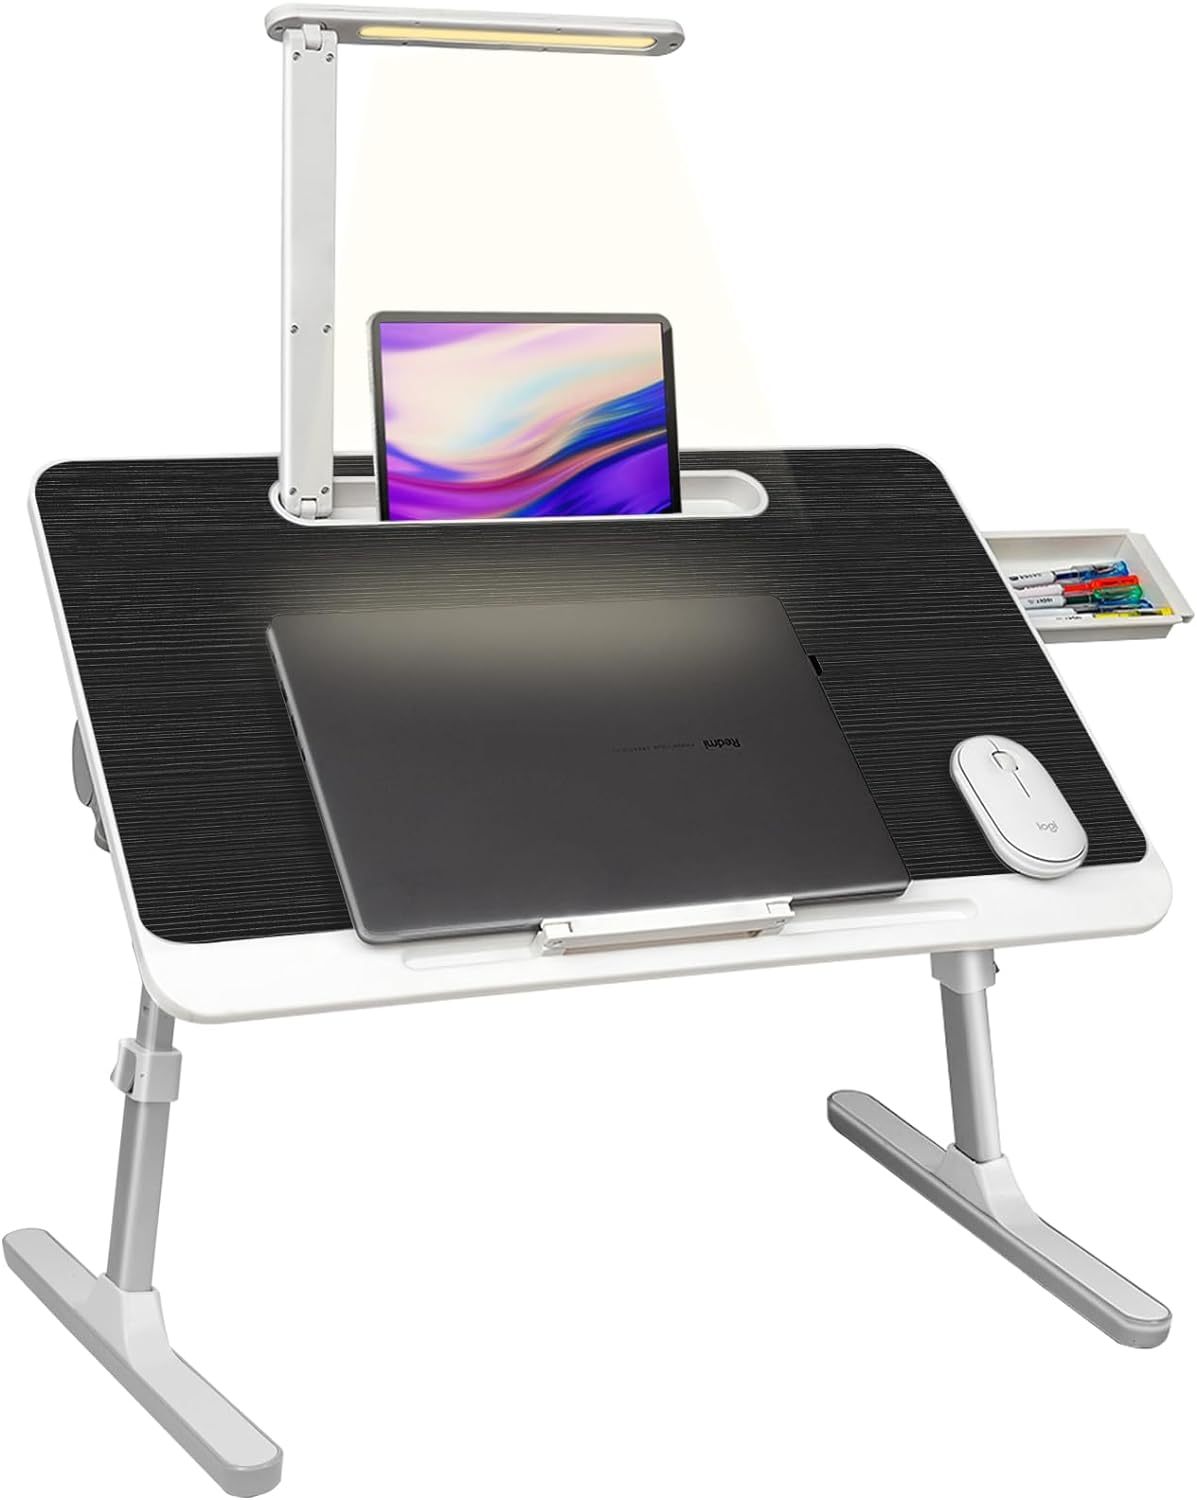 Portable Lap Desk For Laptop